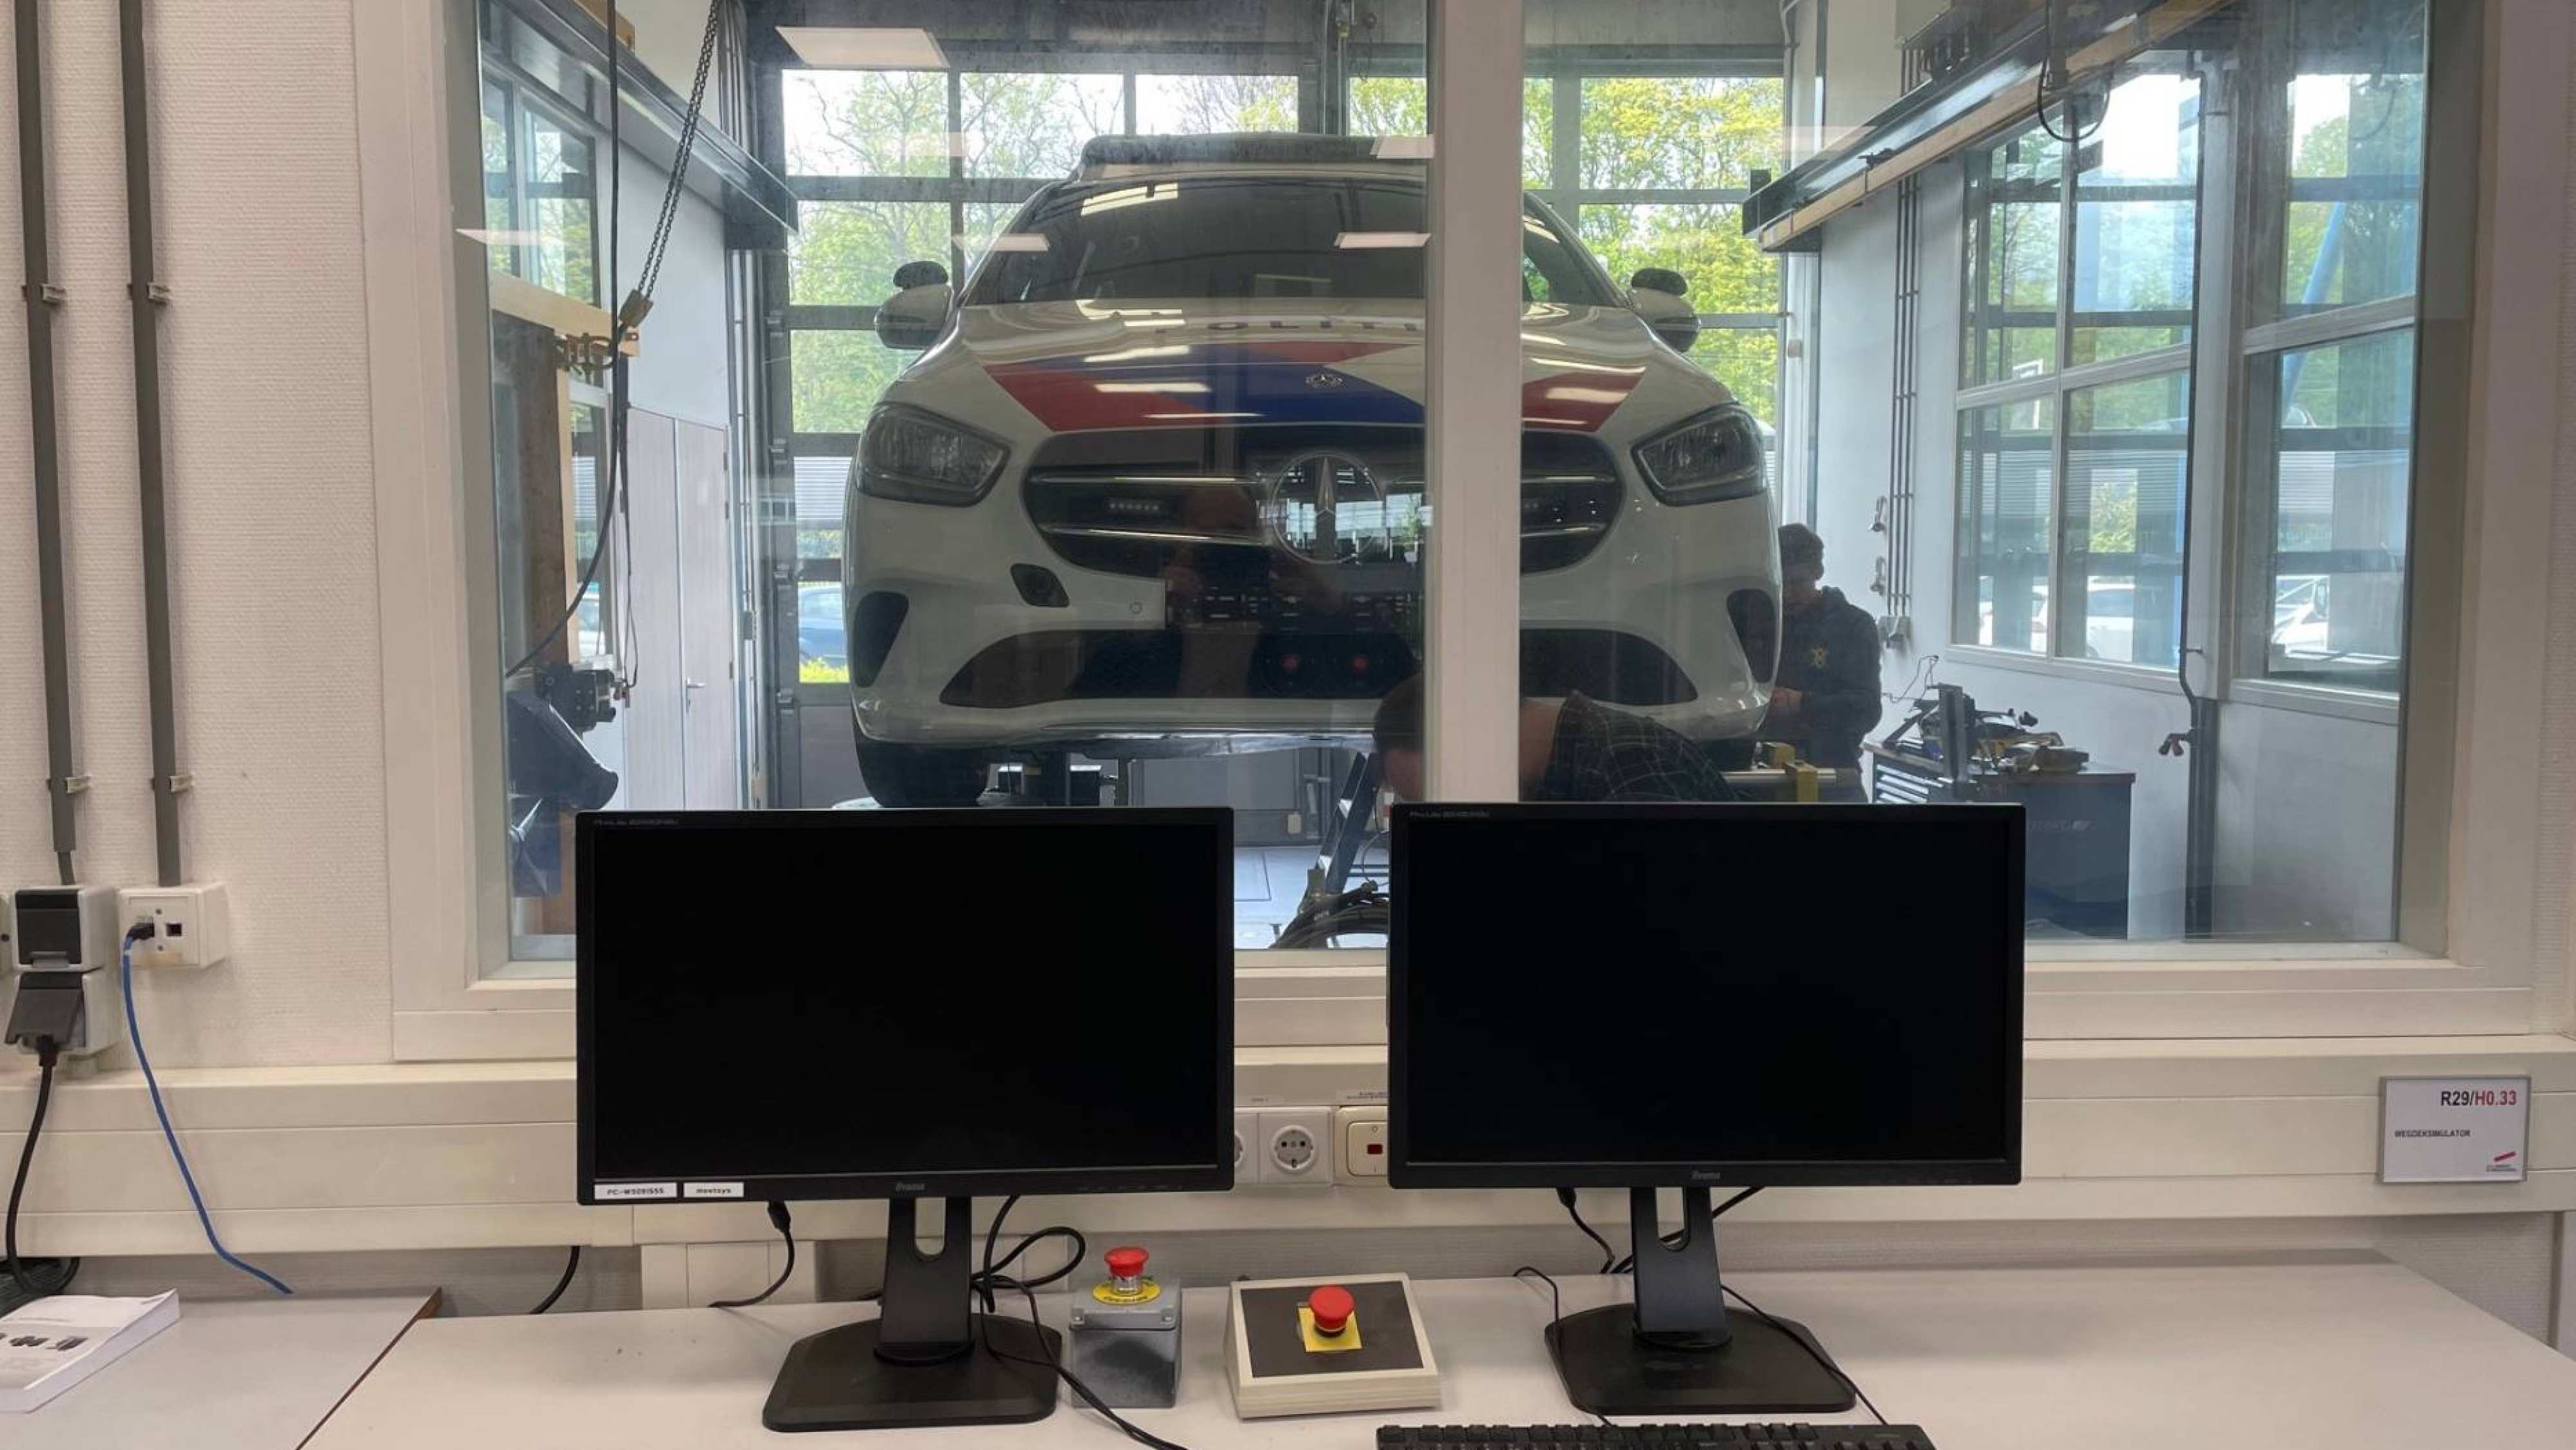 Wegdeksimulator test met een politieauto in het lab van de HAN Academie Engineering en Automotive